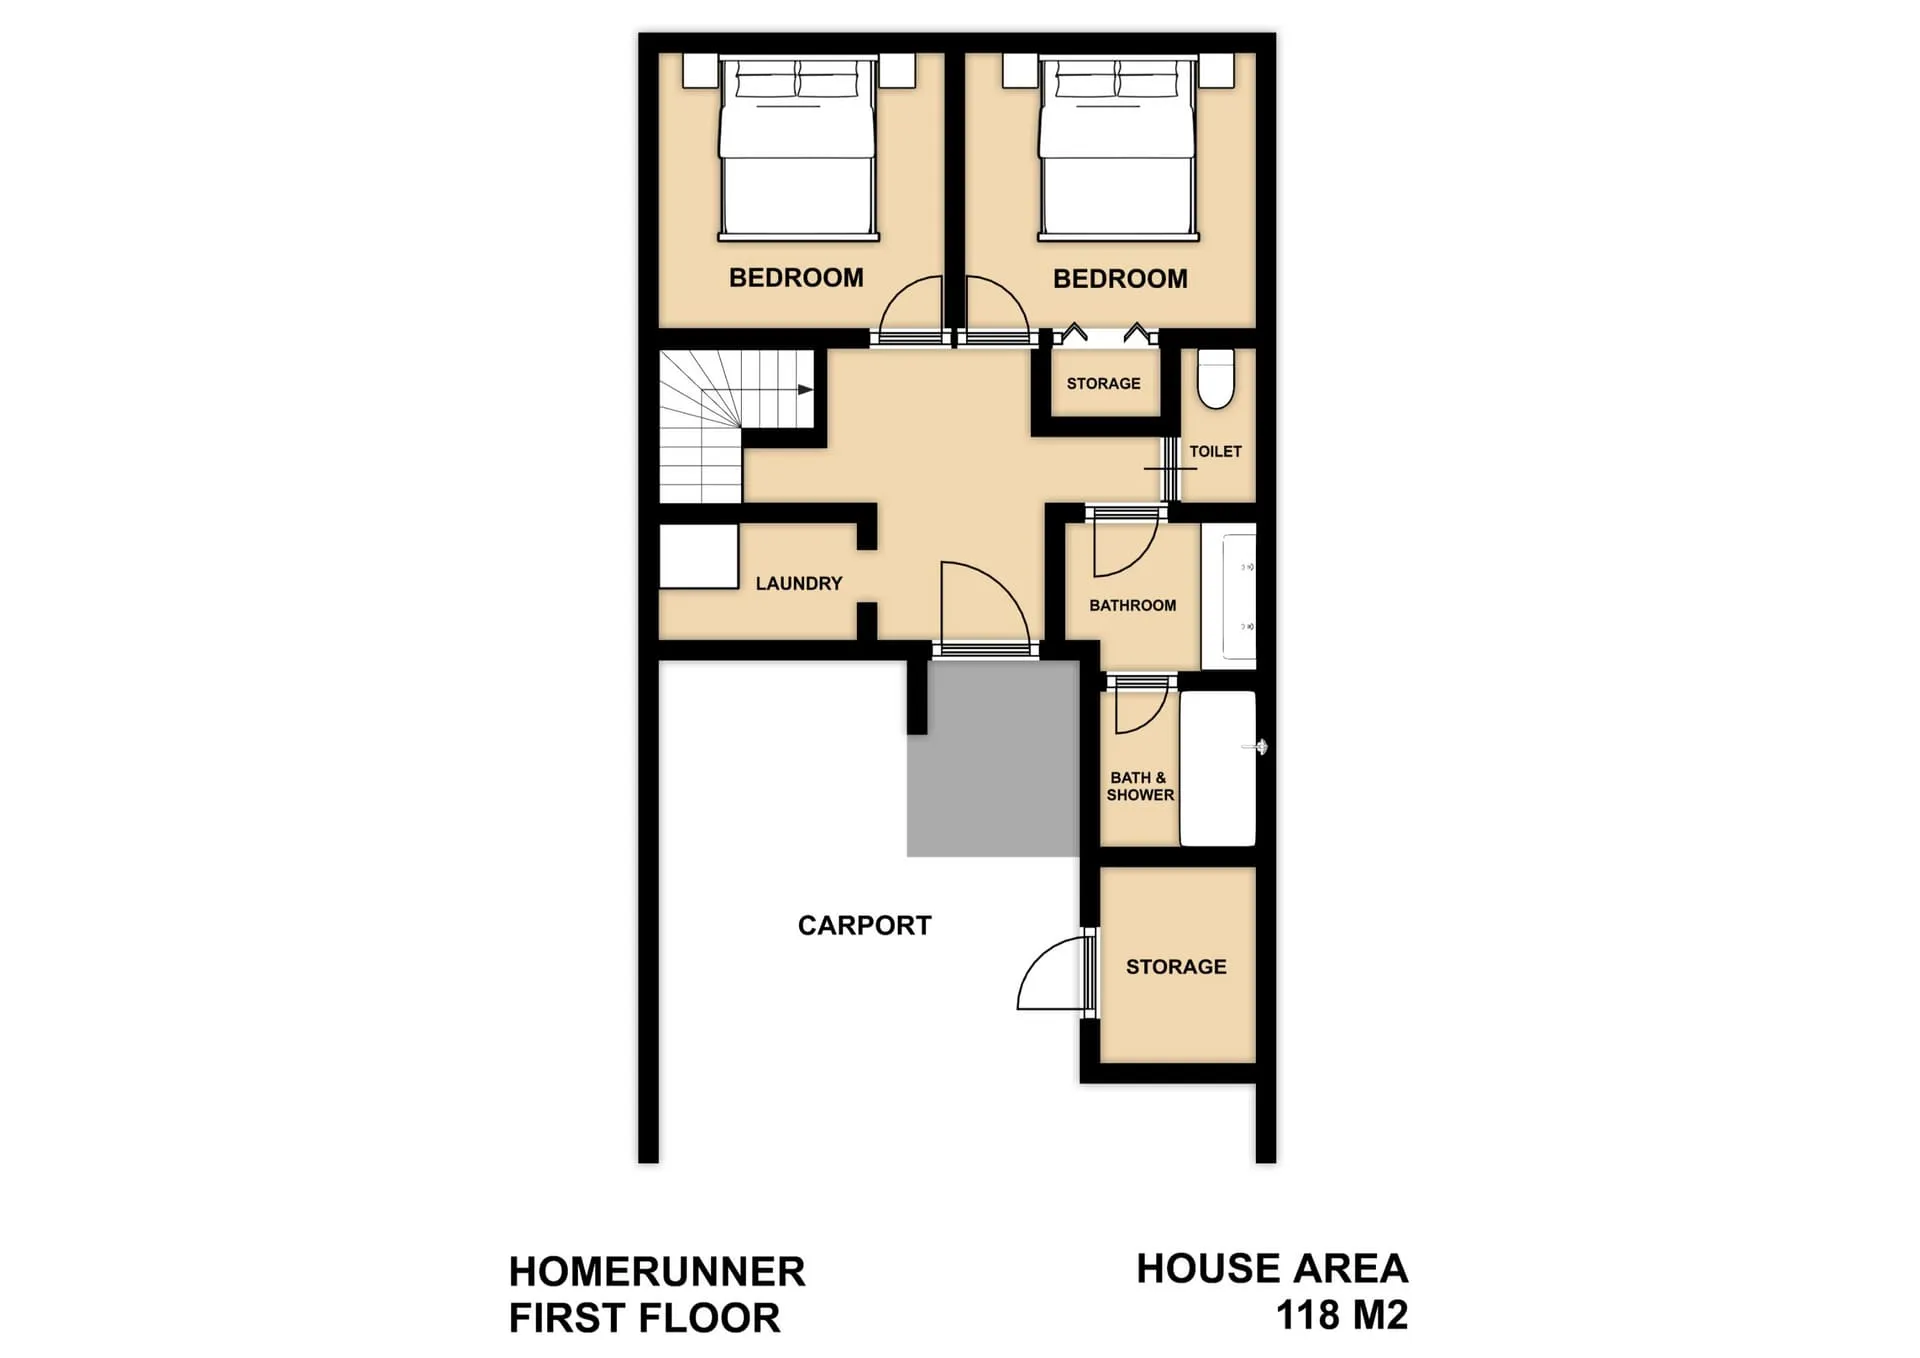 Homerunner First floor plan